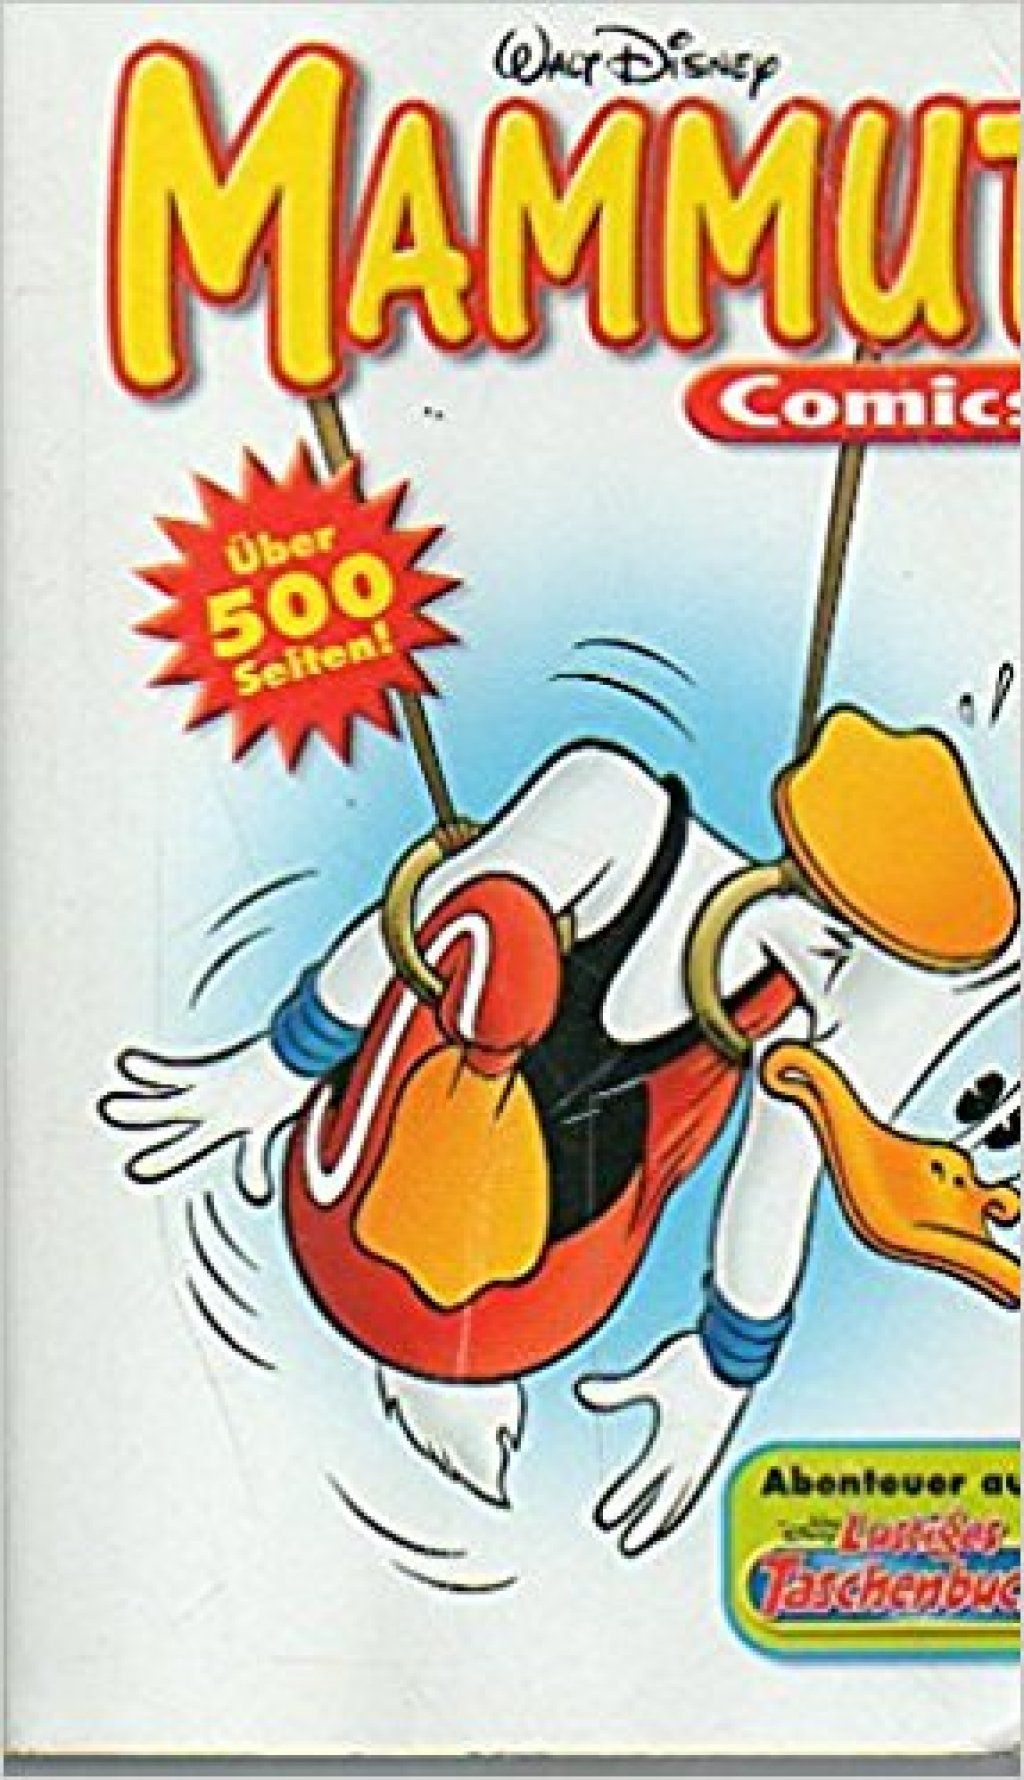 द 30 बेस्ट-सेलिंग कॉमिक बुक सीरीज ऑल टाइम